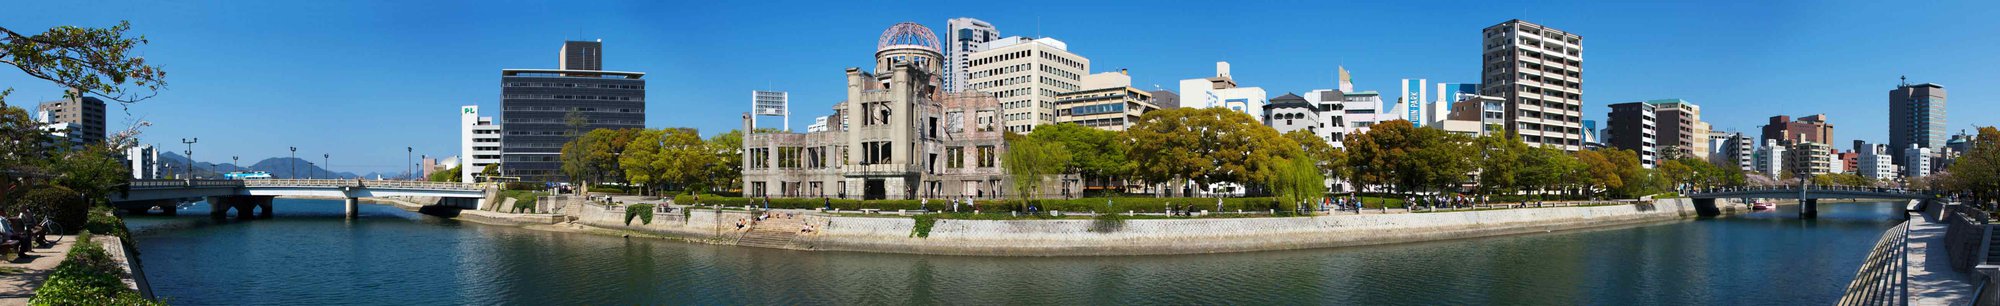 Khám phá khu tưởng niệm Hòa bình Hiroshima, nơi cách tâm vụ nổ hạt nhân 150 m - Ảnh 14.